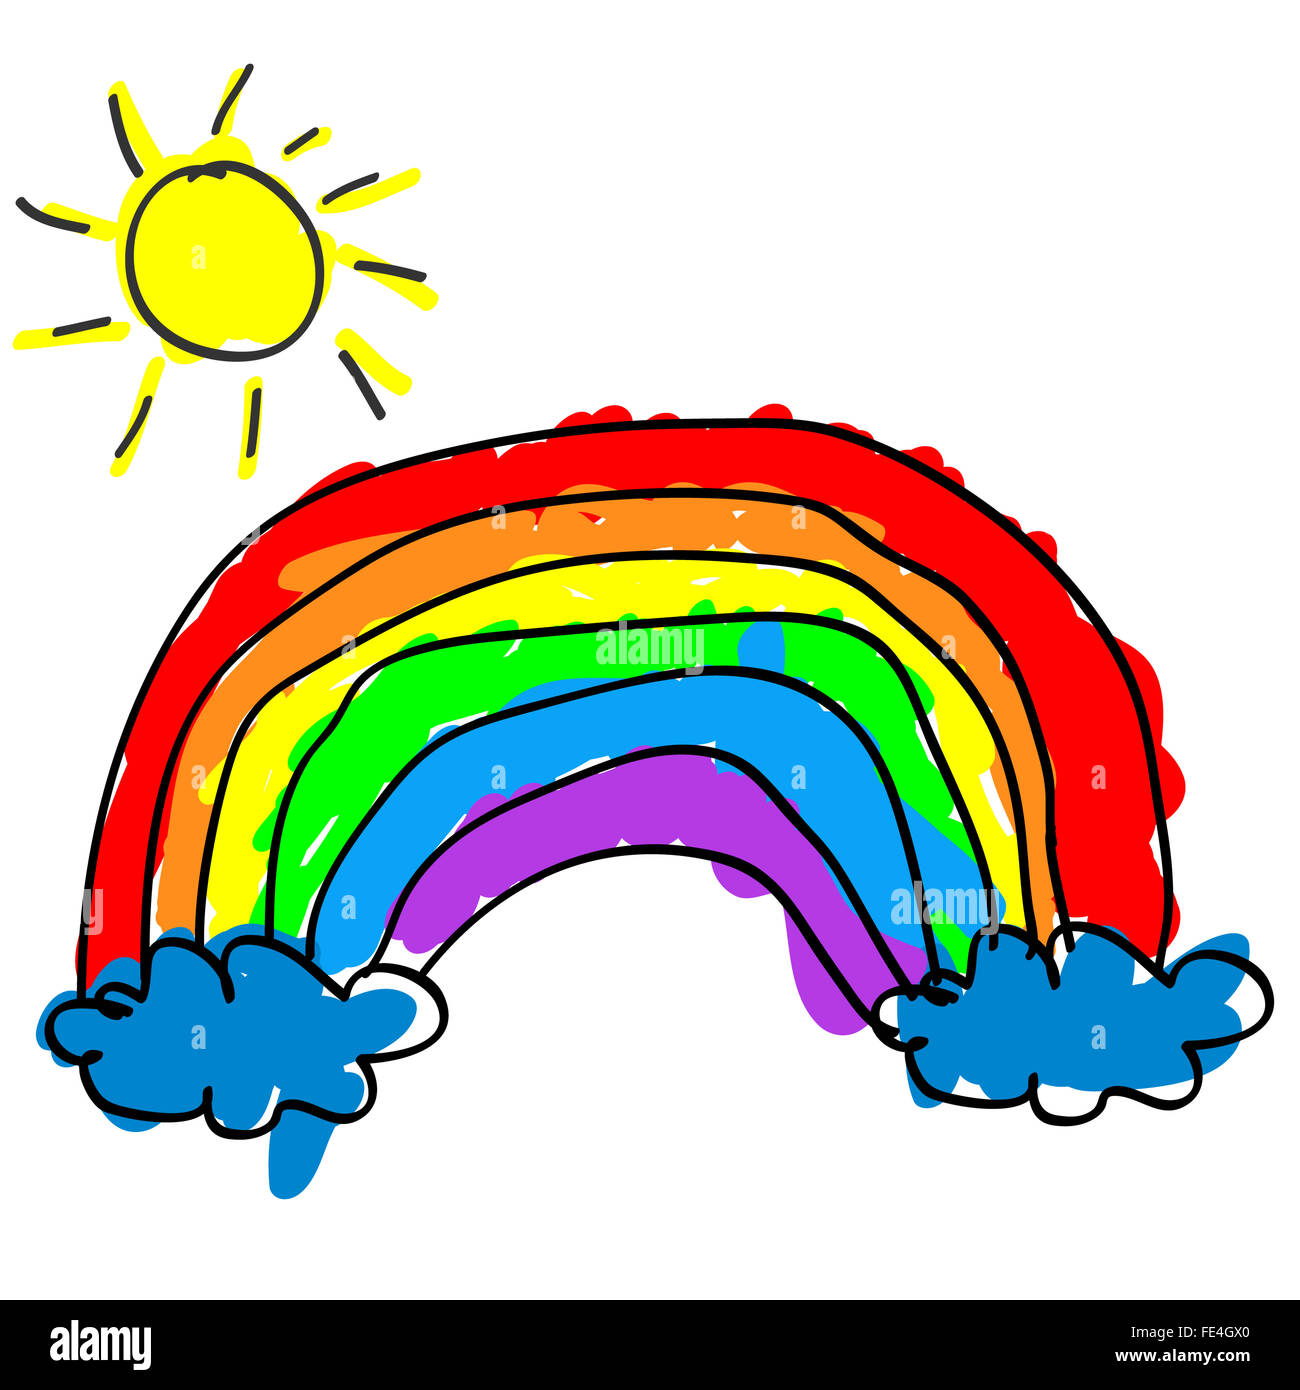 Infantili rainbow carino con i colori al di fuori del profilo come un bambino del disegno e di colorazione Foto Stock